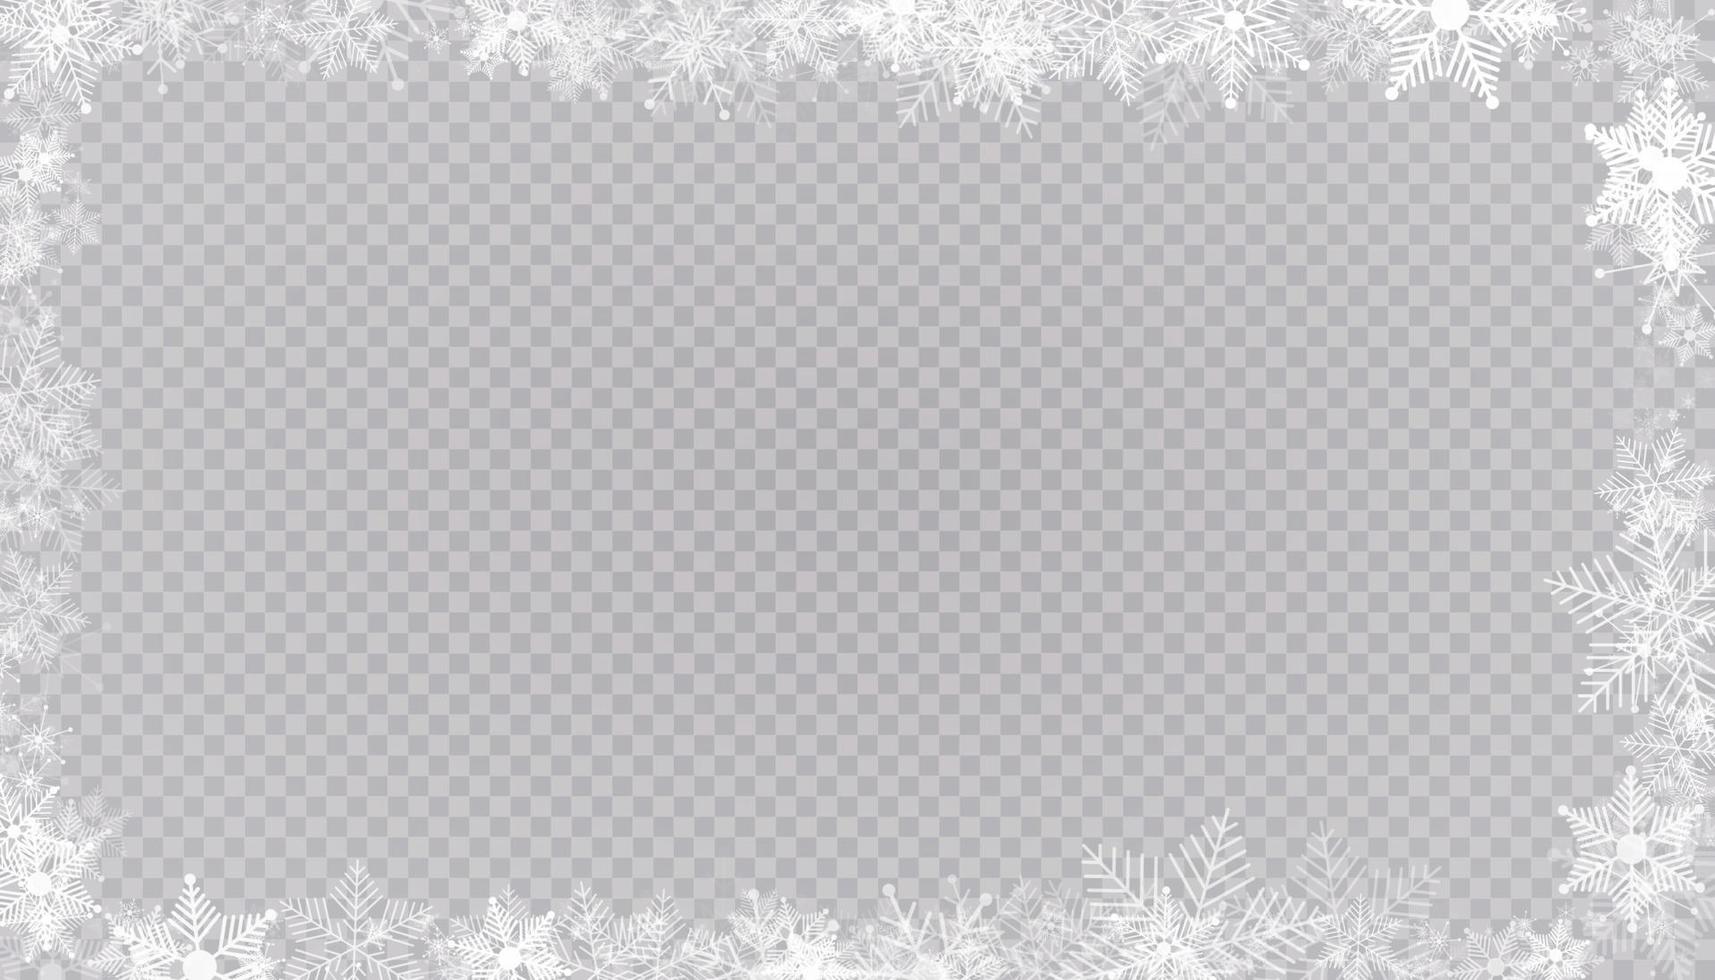 borde de marco rectangular de nieve de invierno con fondo de estrellas, destellos y copos de nieve. banner navideño festivo, tarjeta de felicitación de año nuevo, postal o invitación ilustración vectorial vector